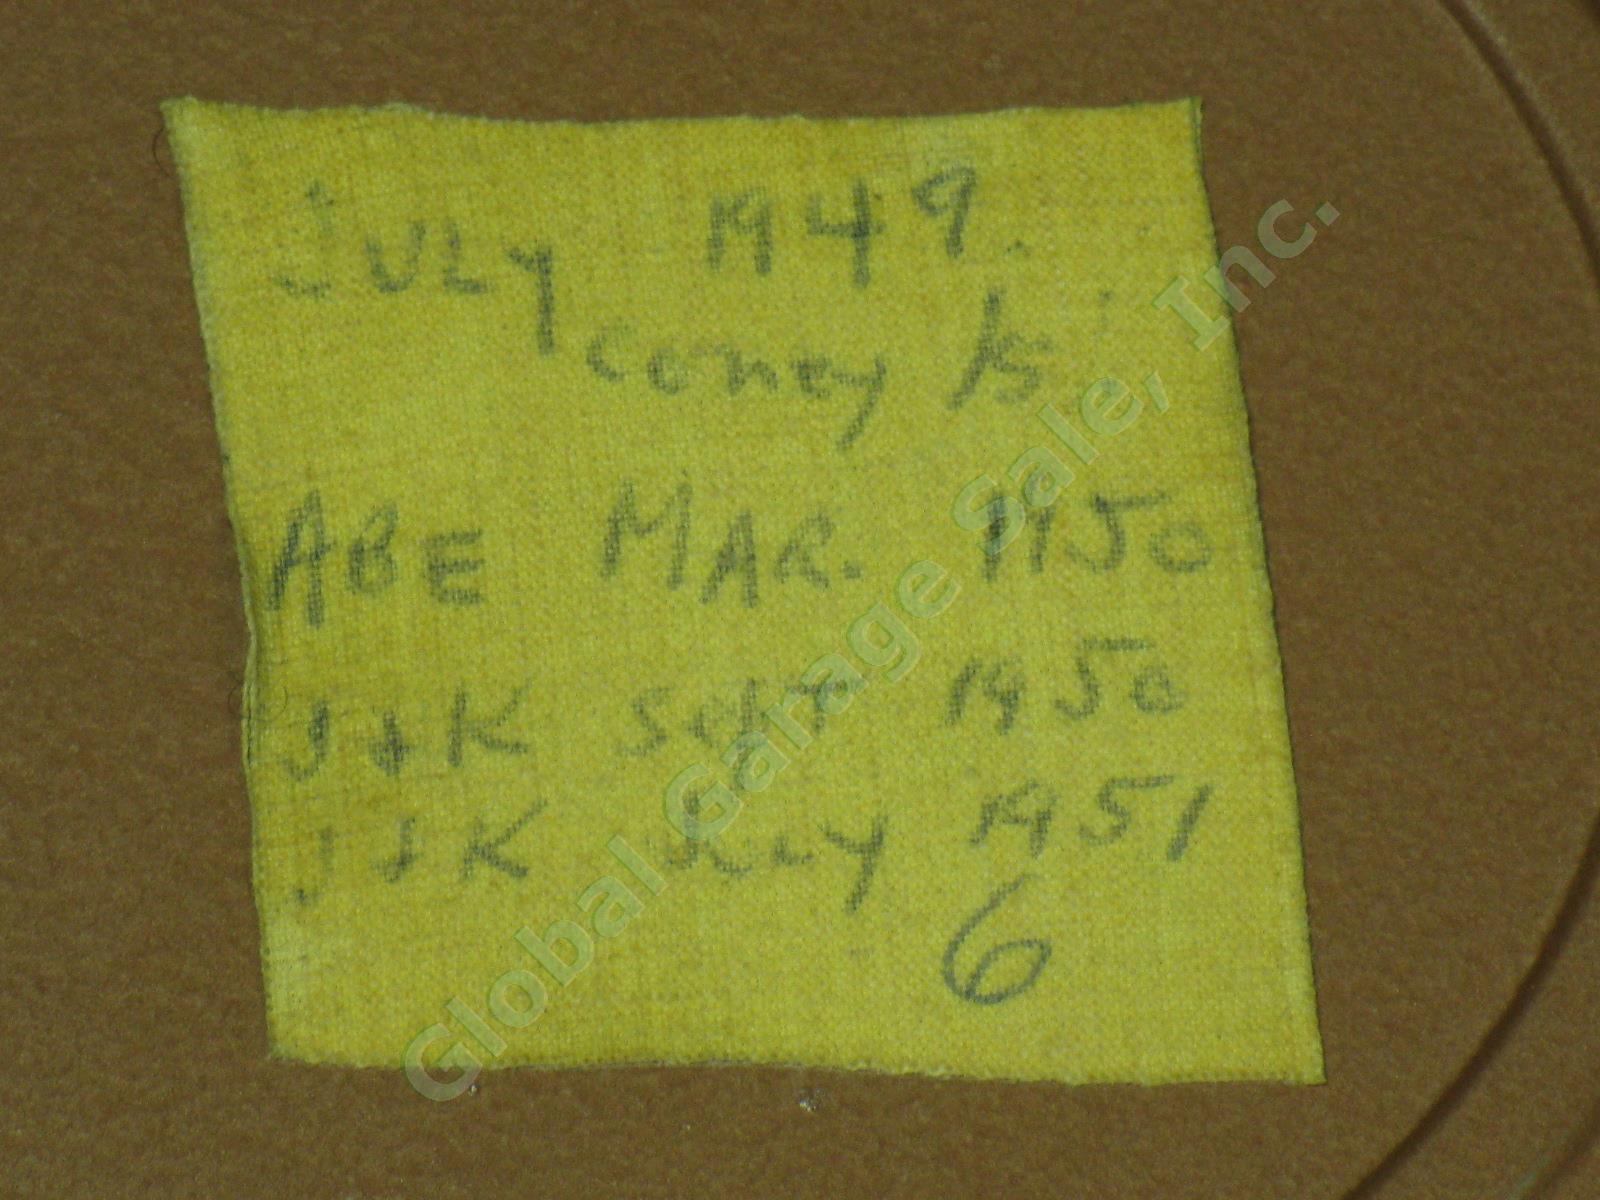 11 Vtg 1940s-1960s 16mm Home Movie Film Reels Lot 1949 Coney Island Shawanga NR! 1